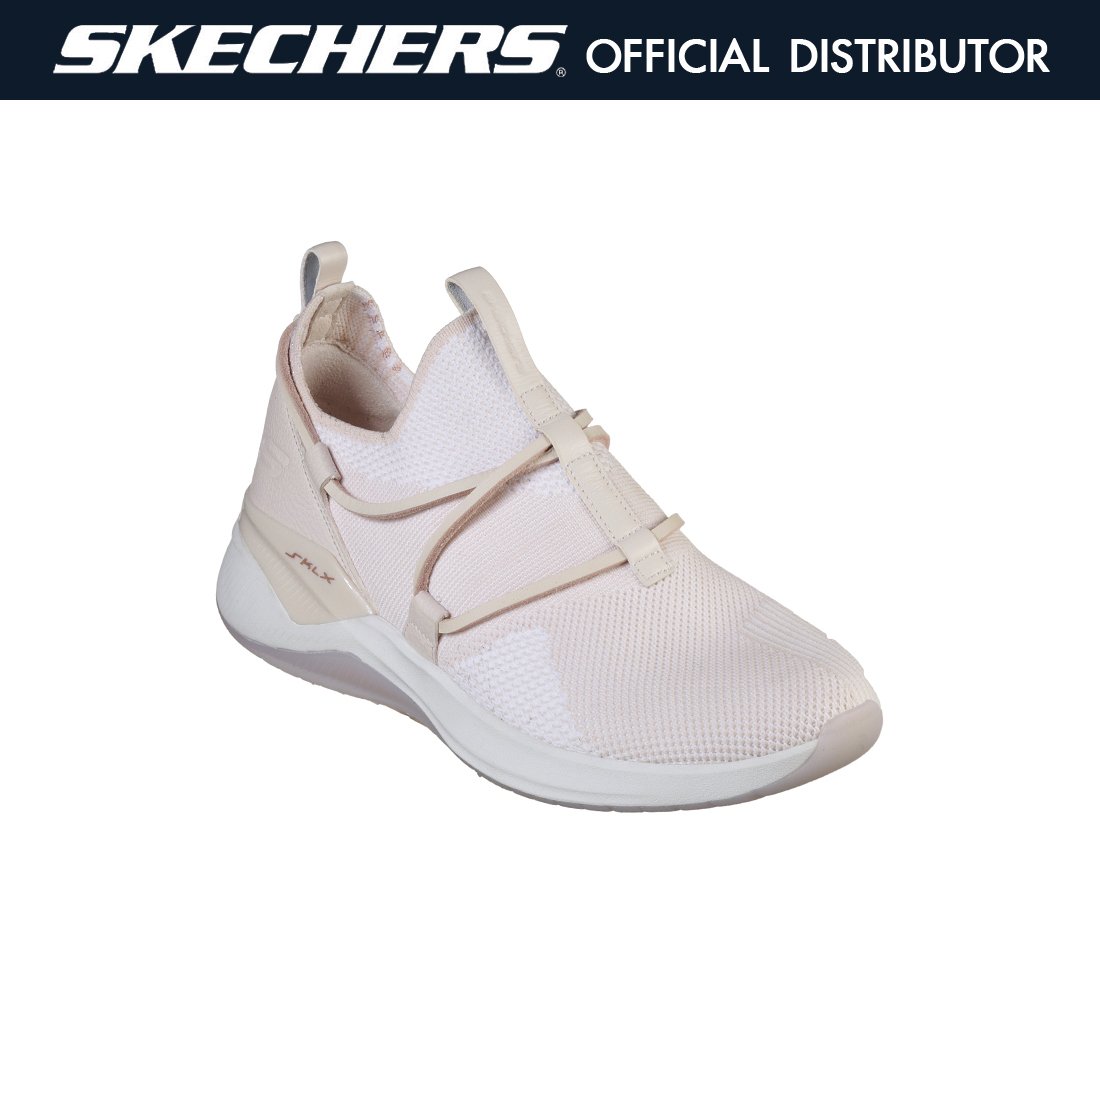 SKECHERS Modena - Acapella รองเท้าลำลองผู้หญิง